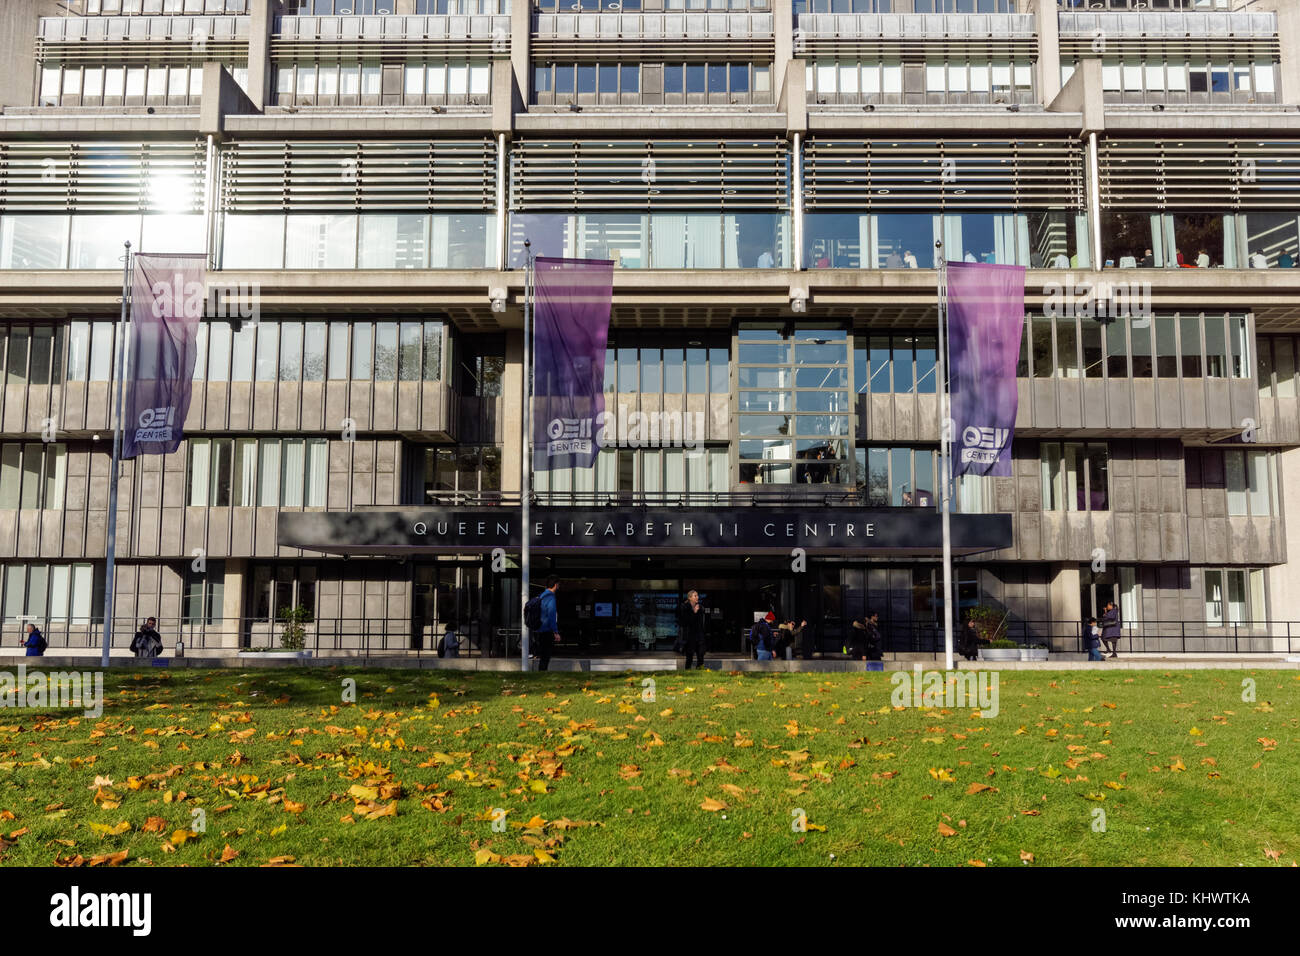 La reine Elizabeth II Conference Centre, Westminster, Londres Angleterre Royaume-Uni UK Banque D'Images